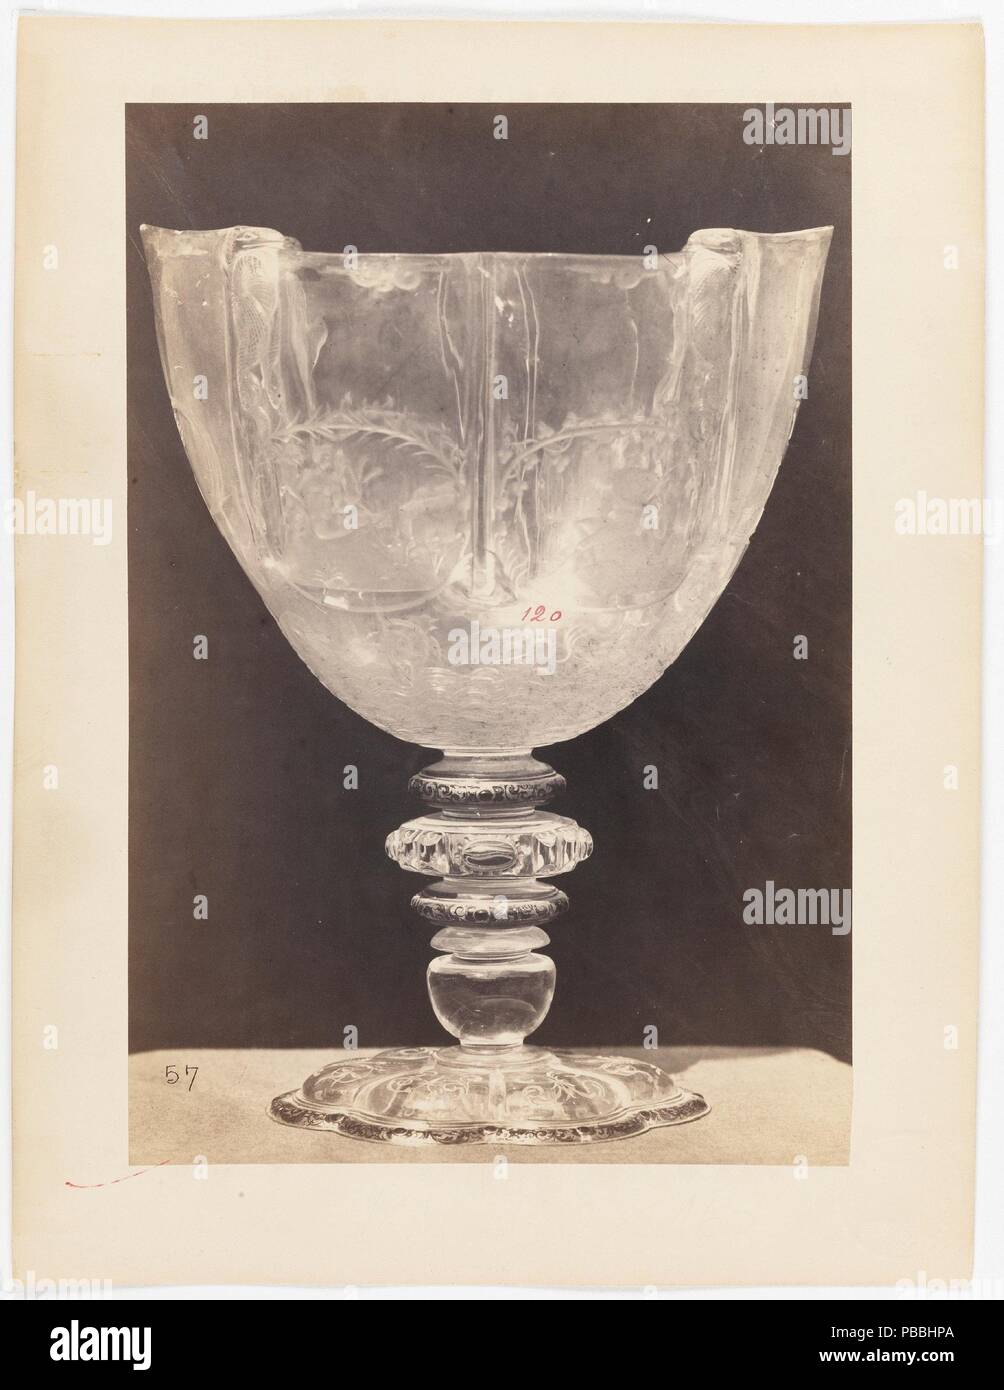 Jane Clifford/' Cup mit den Vier Jahreszeiten". Ca. 1863. Eiklar auf Fotopapier. Museum: Museo del Prado, Madrid, España. Stockfoto